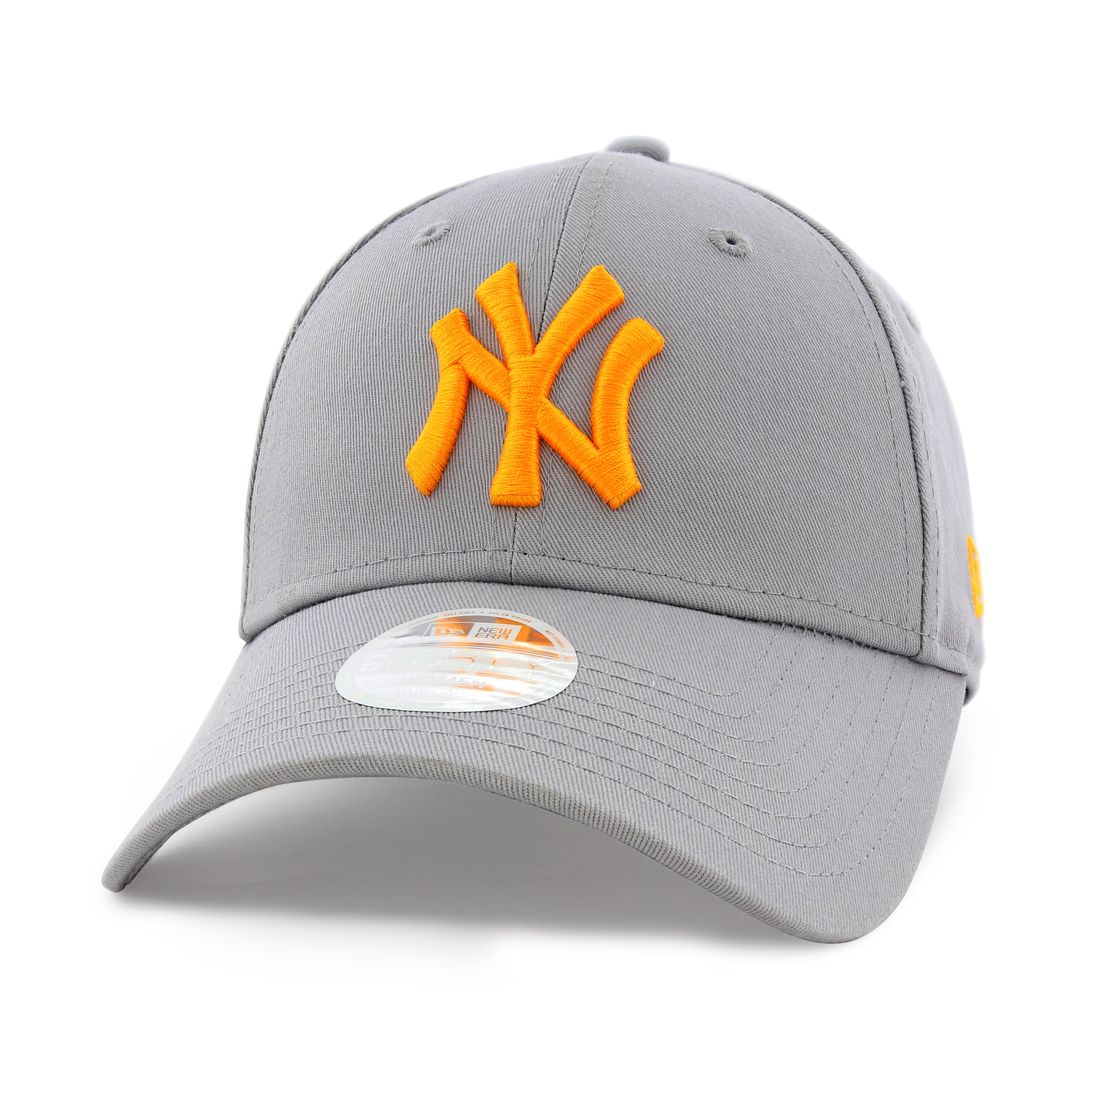 قبعة للنساء لفريق يانكيز نيويورك ليغ إيسنشيال من نيو إيرا لون برتقالي